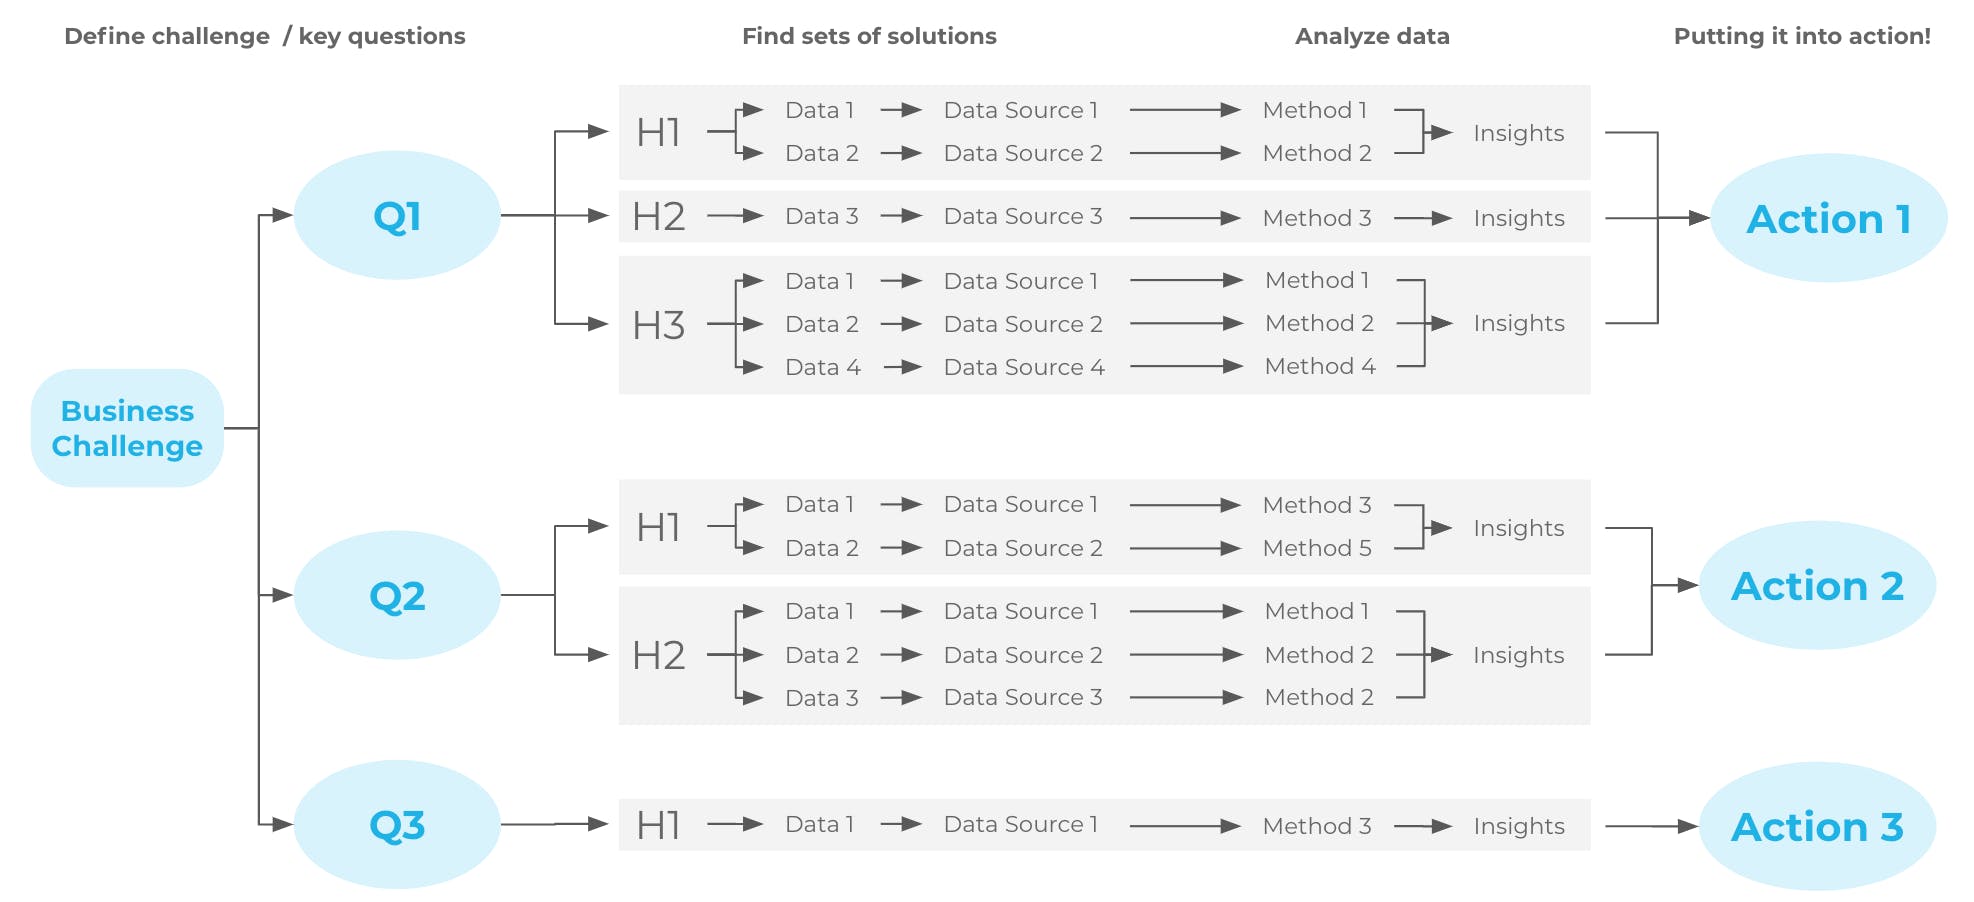 The full Data Analysis Framework